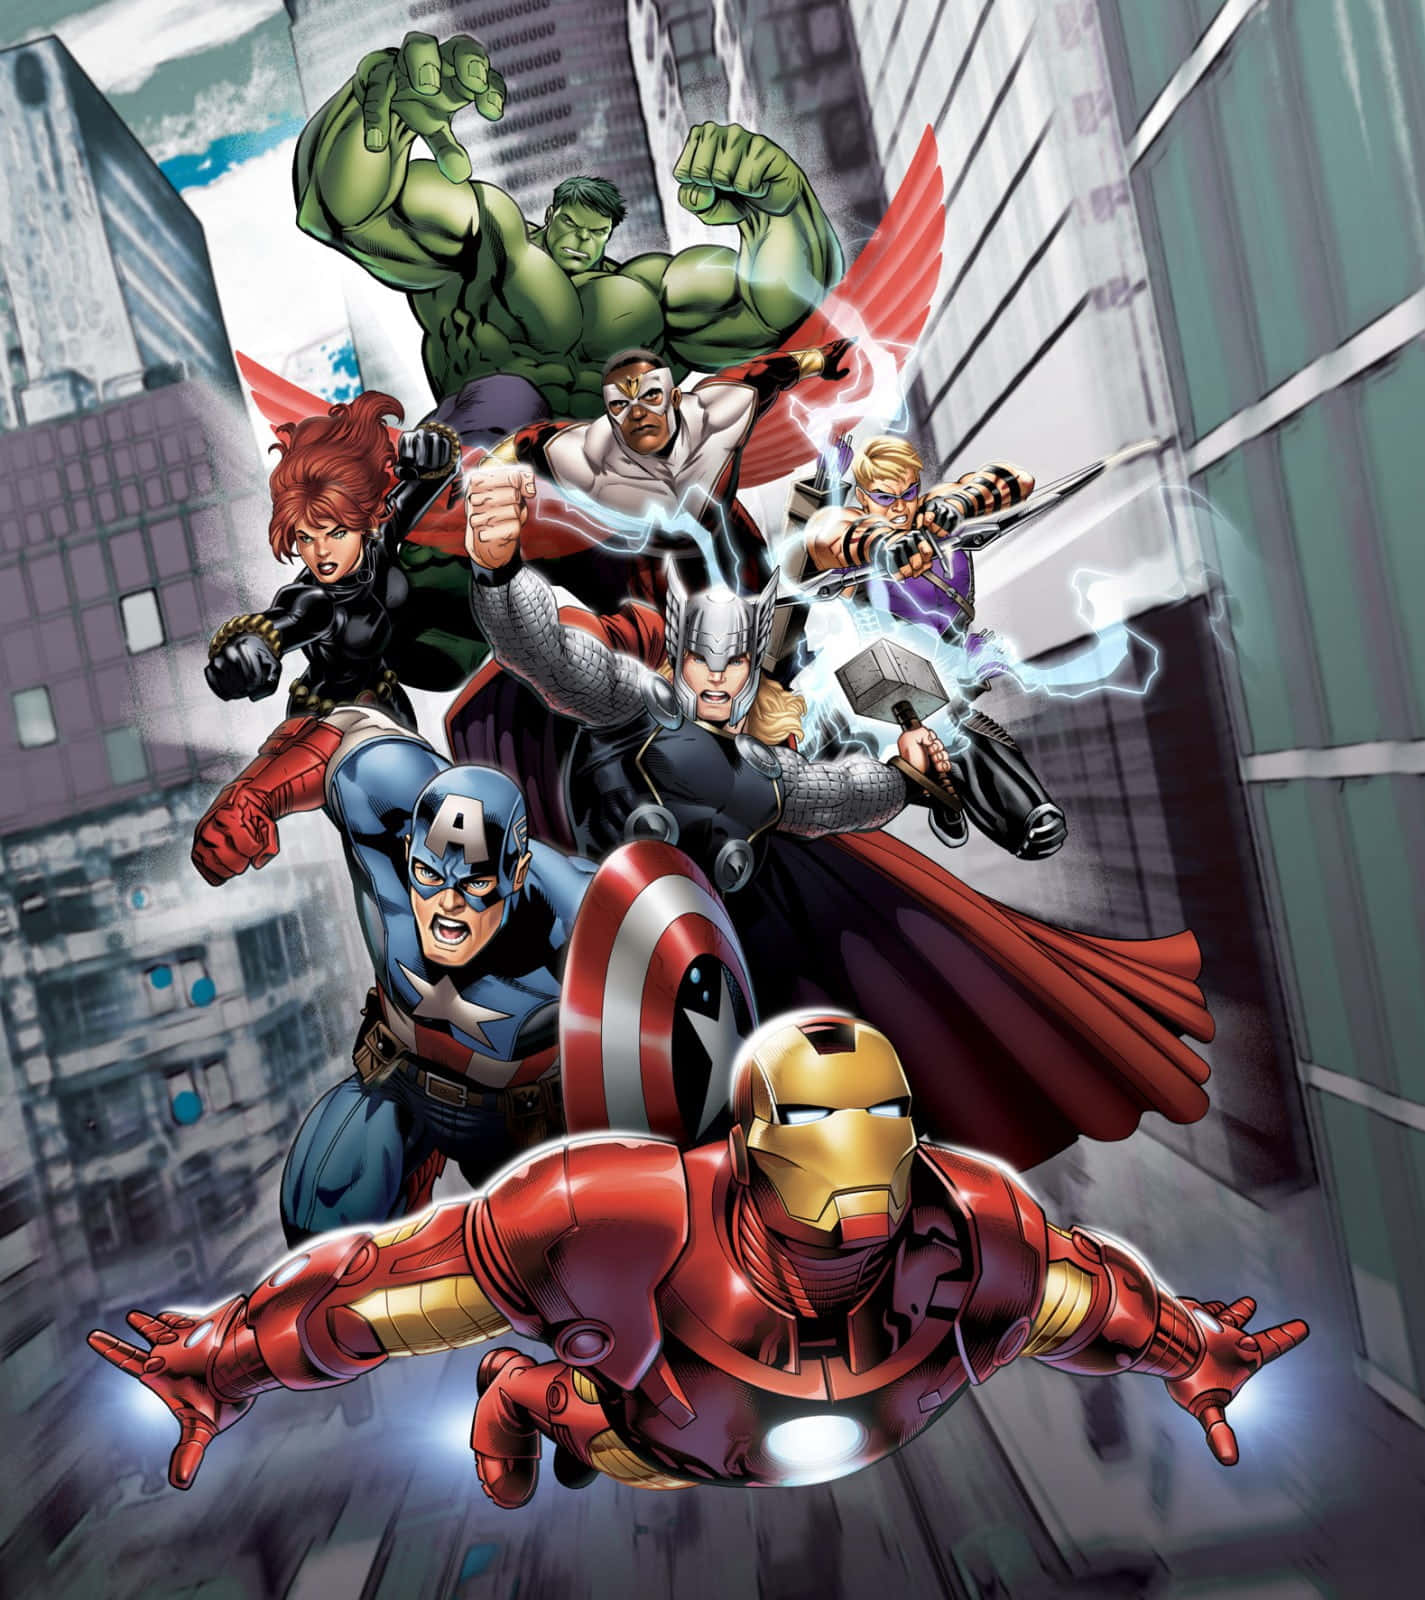 Animeradehäftiga Avengers I Staden. Wallpaper